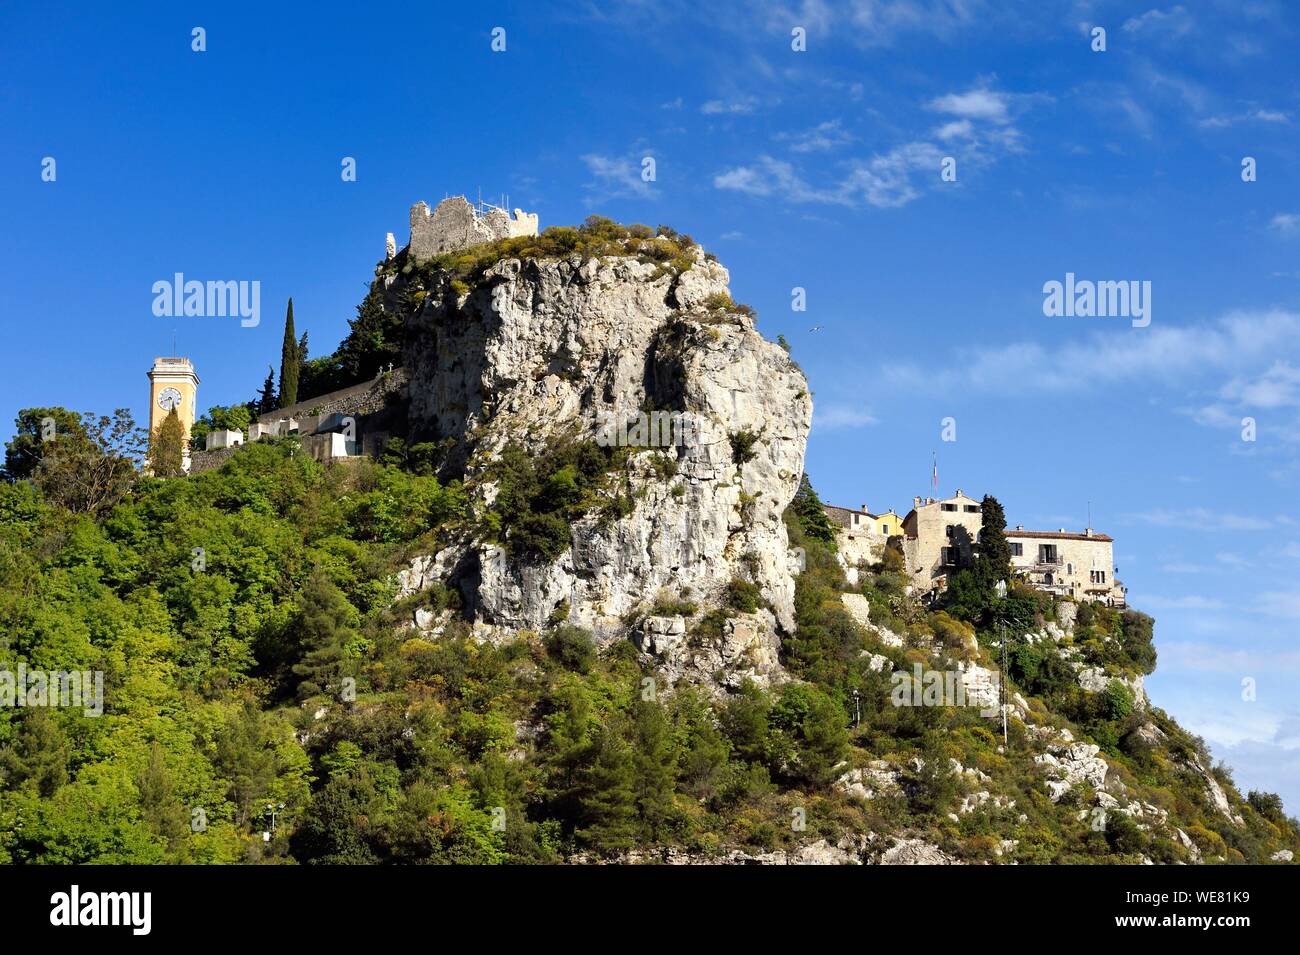 France, Alpes Maritimes, le village perché d'Eze Banque D'Images